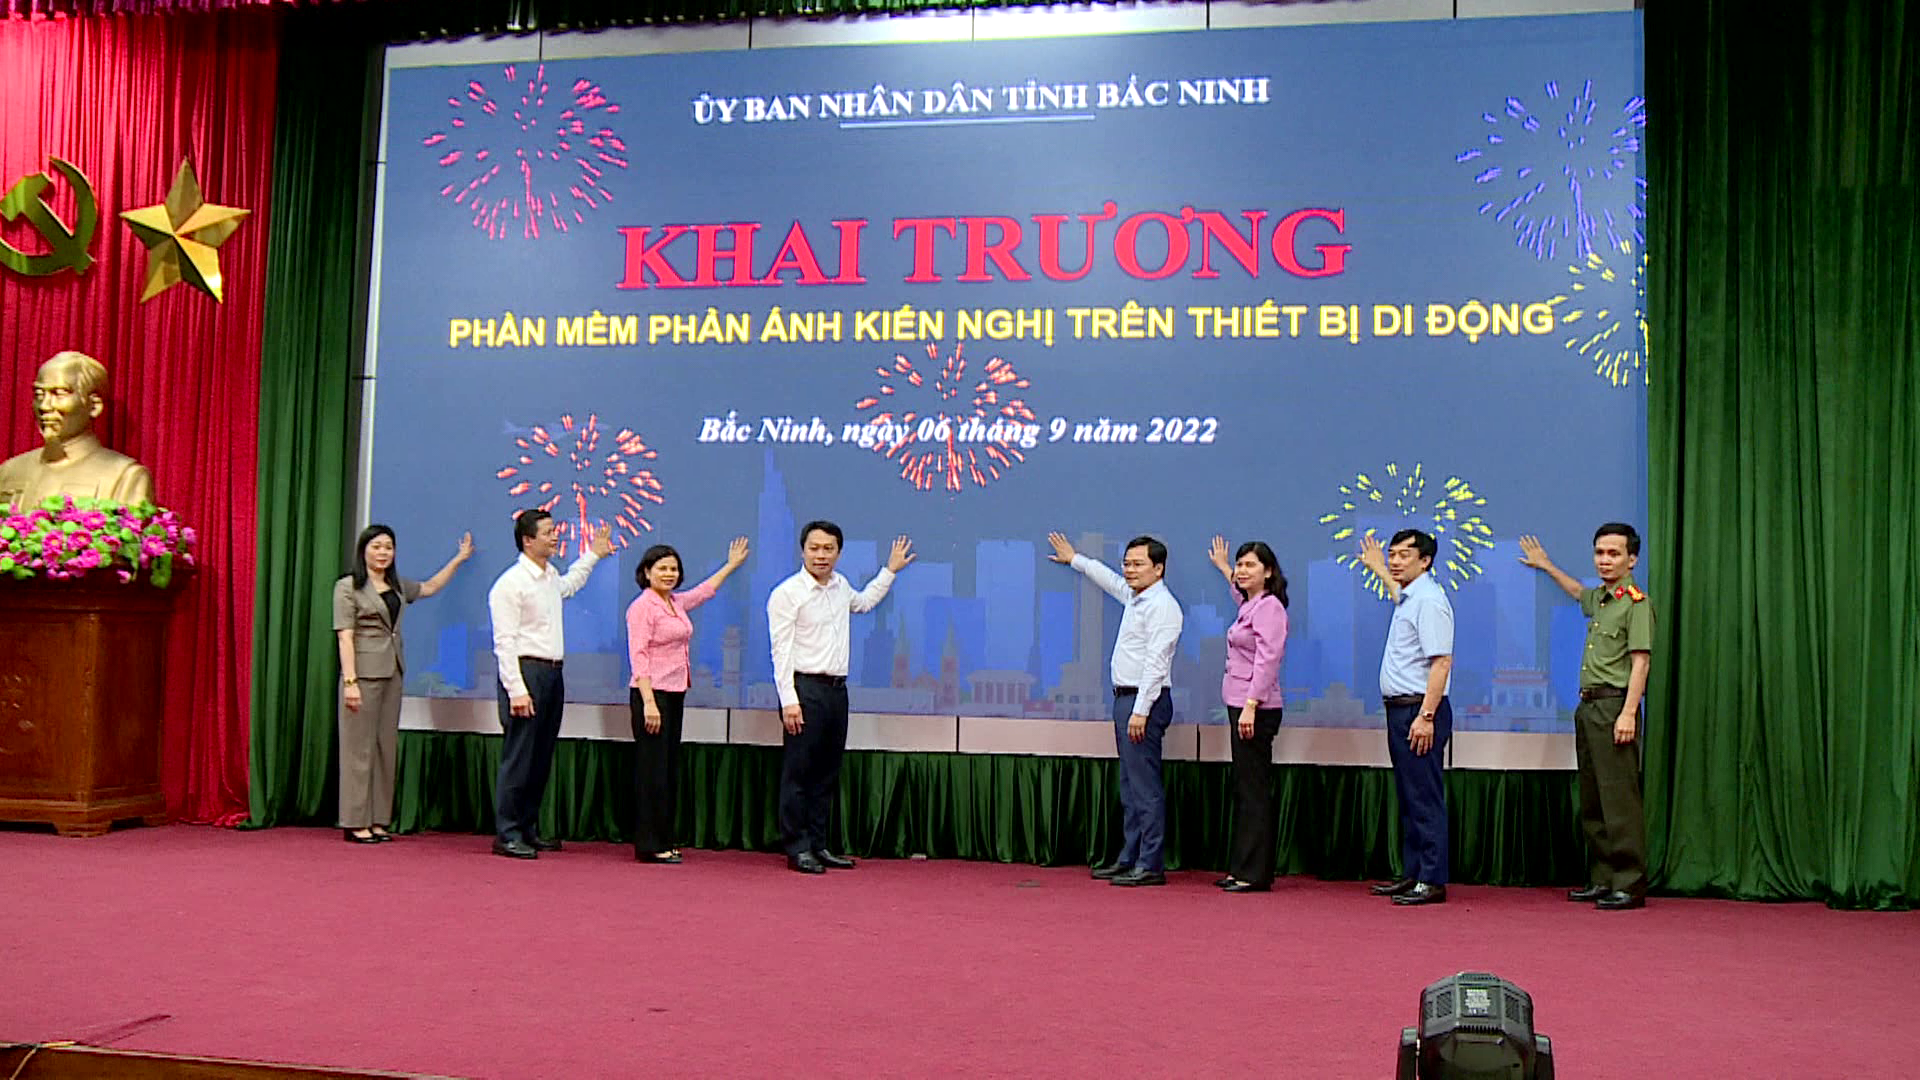 Thực hiện CCHC, Bắc Ninh đặt mục tiêu mức độ hài lòng của người dân đạt trên 95% - Ảnh 3.